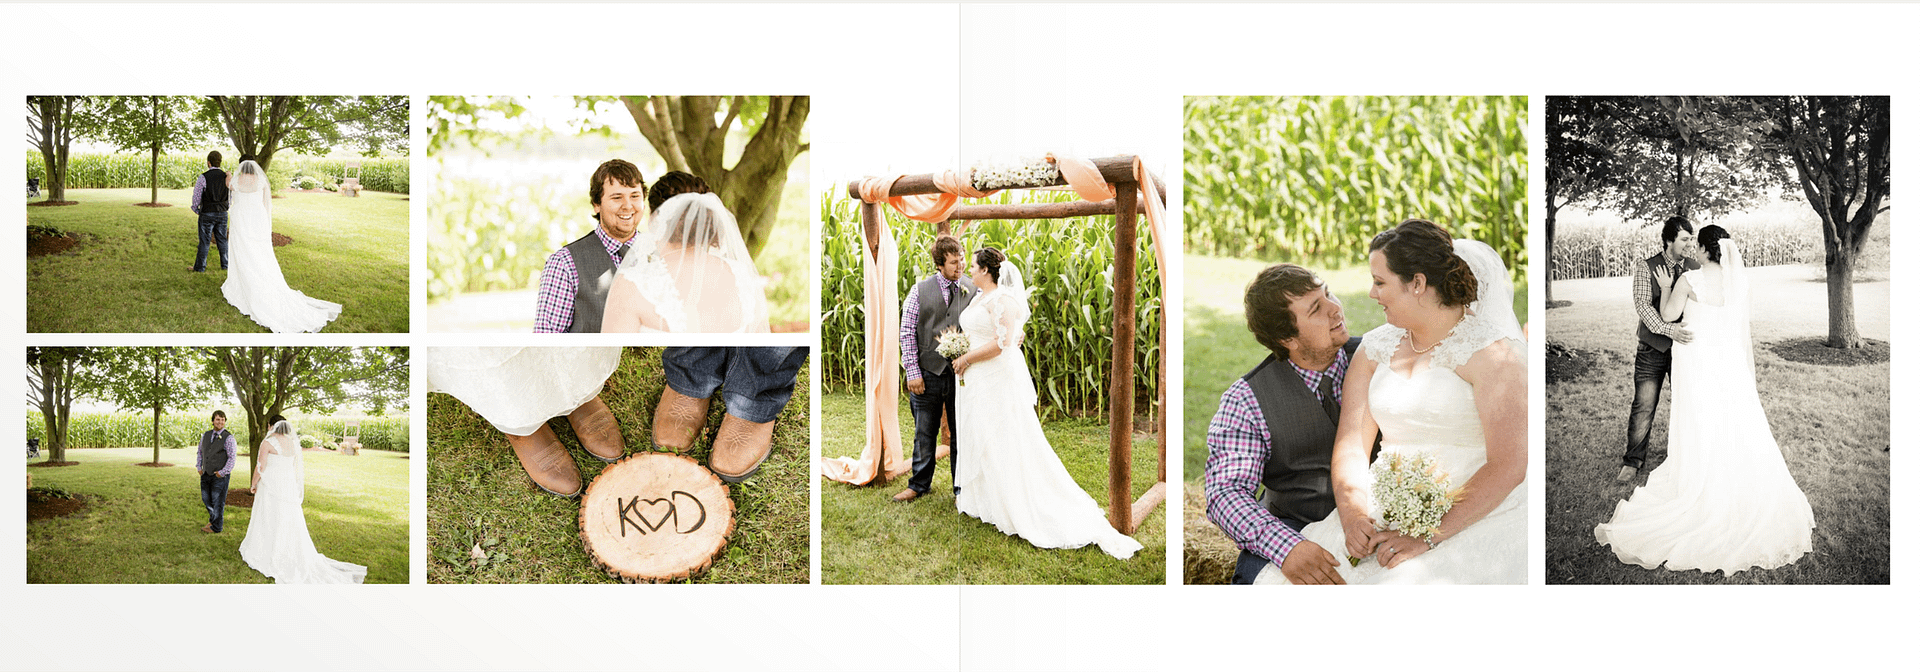 Ontario Farm Wedding Photography